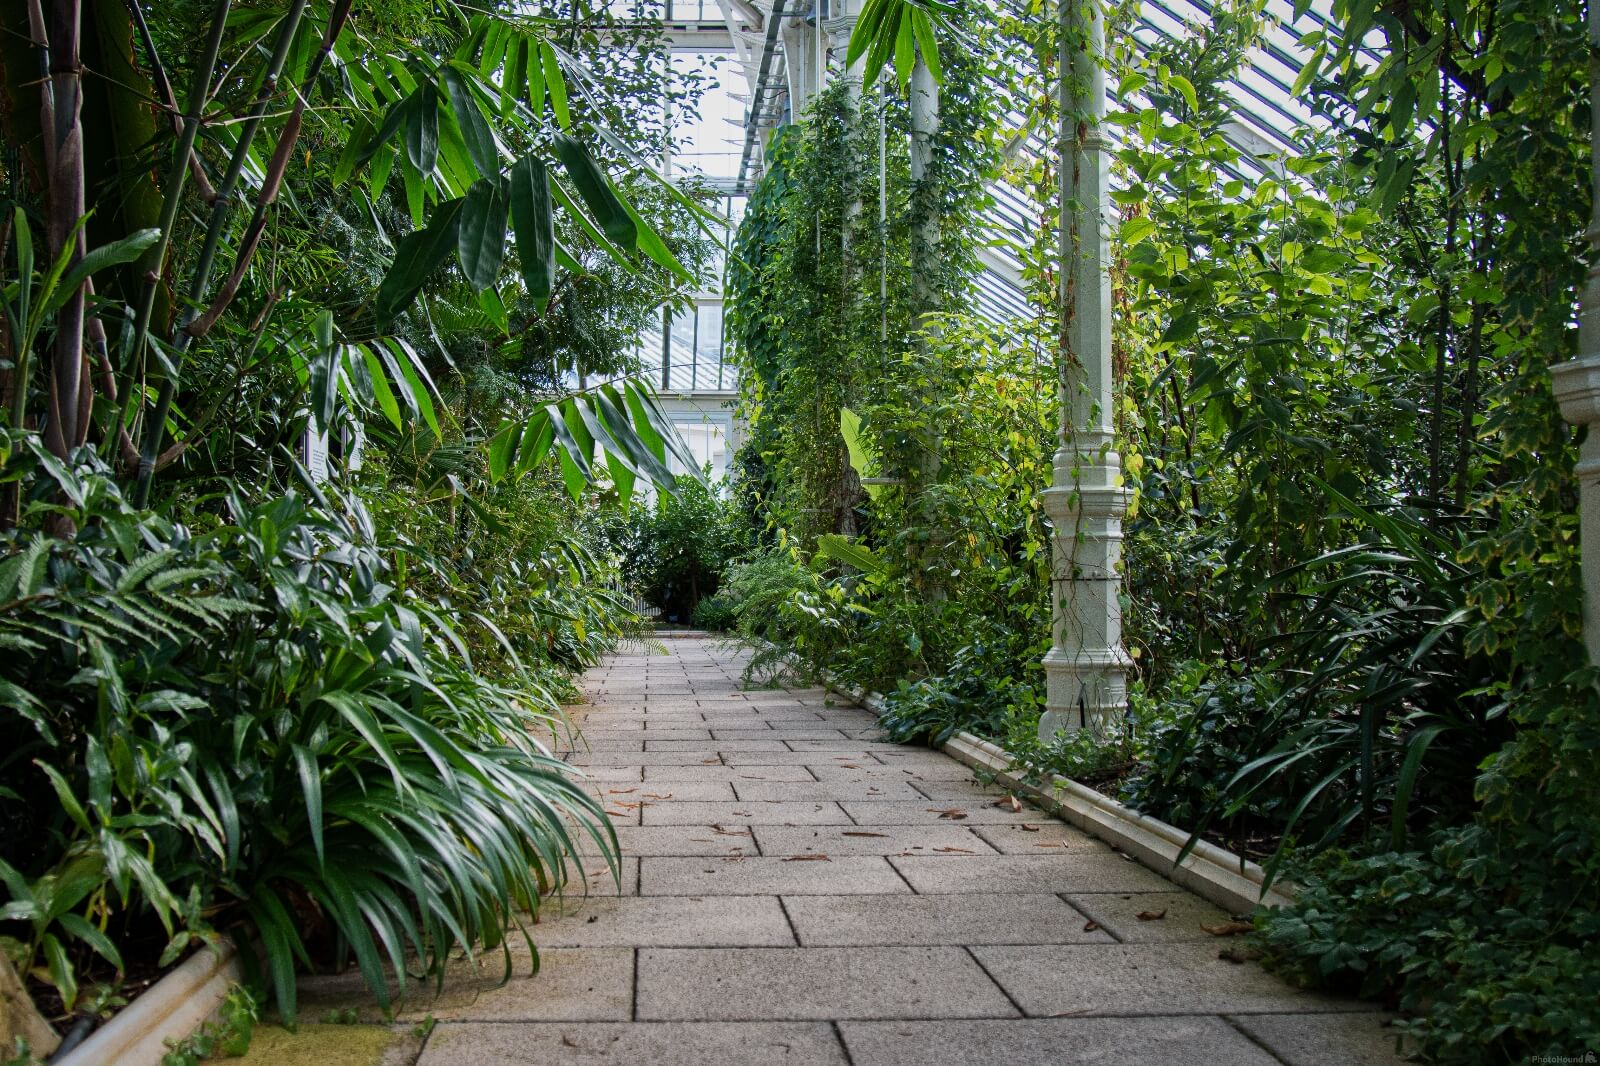 Image of Royal Botanic Gardens Kew by Jules Renahan